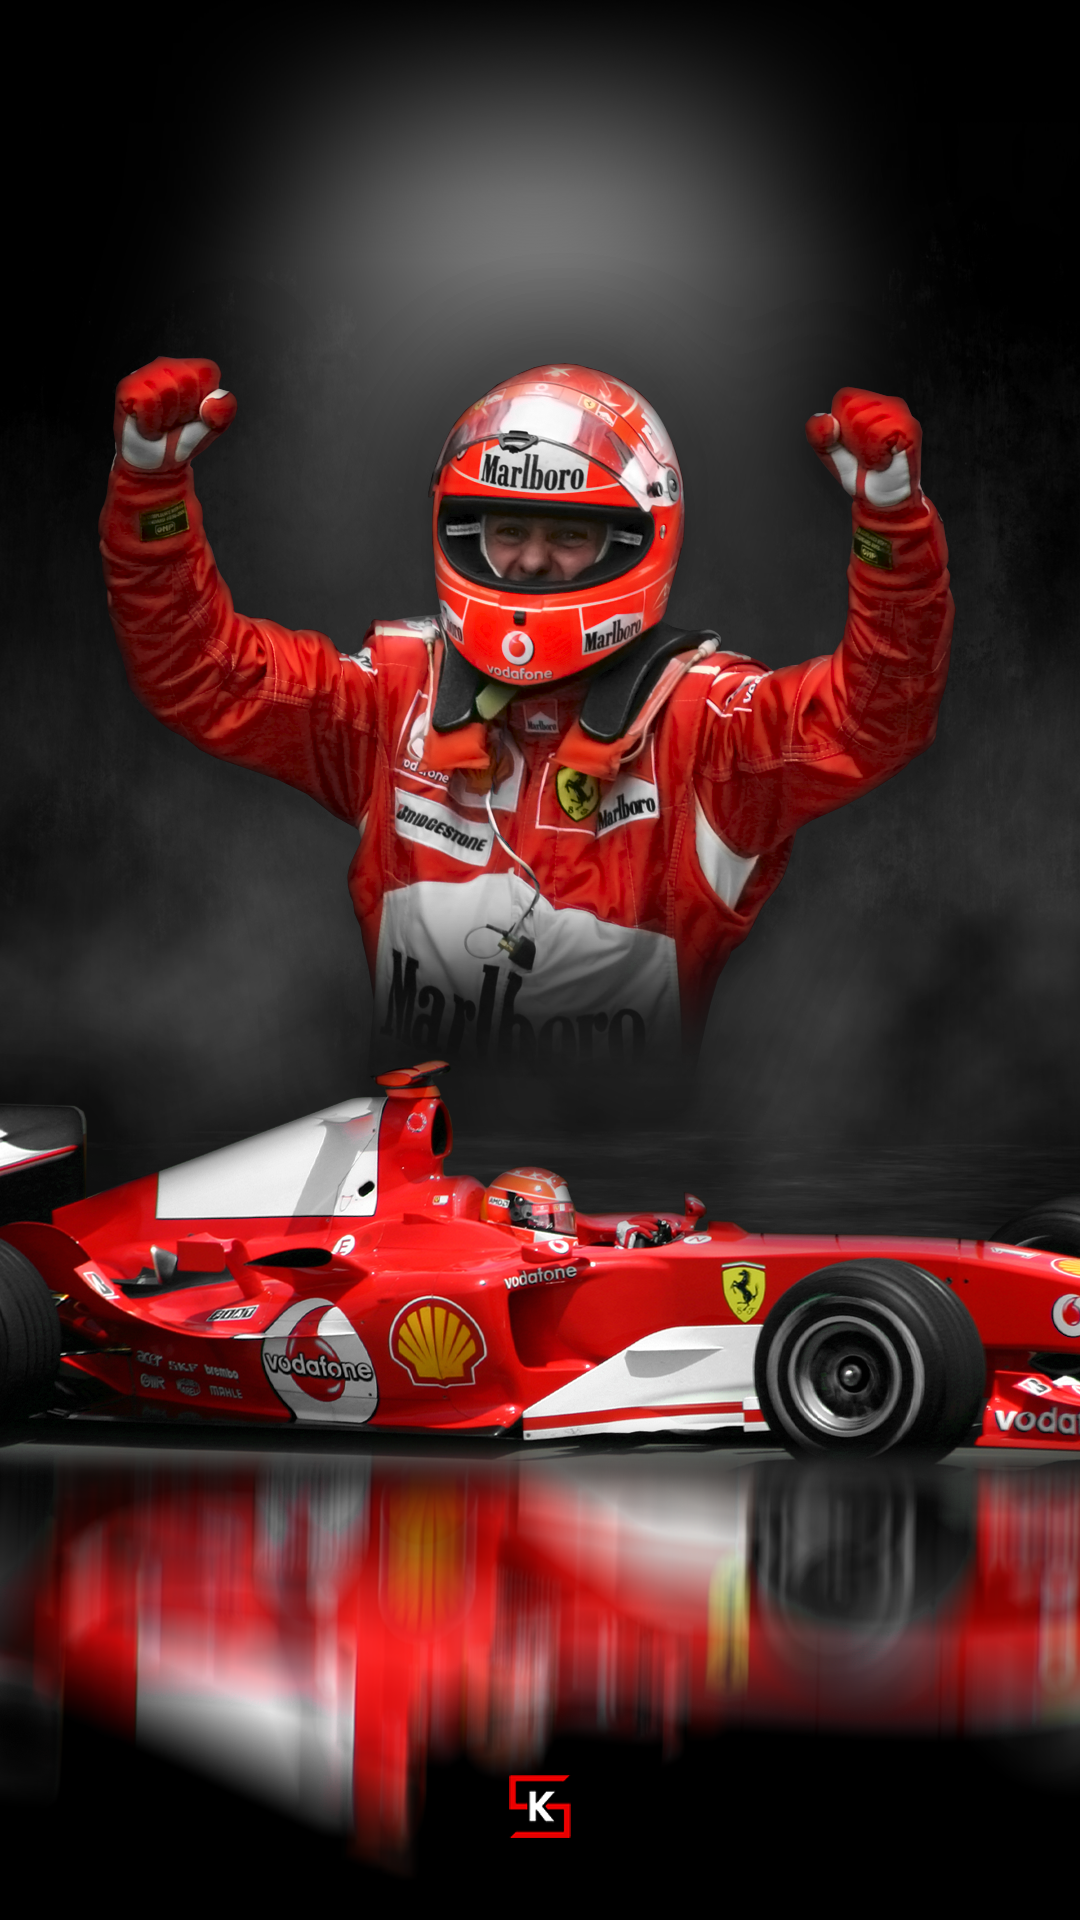 Michael Schumacher Is Jumping Enjoying Success HD Schumacher Wallpapers   HD Wallpapers  ID 48739